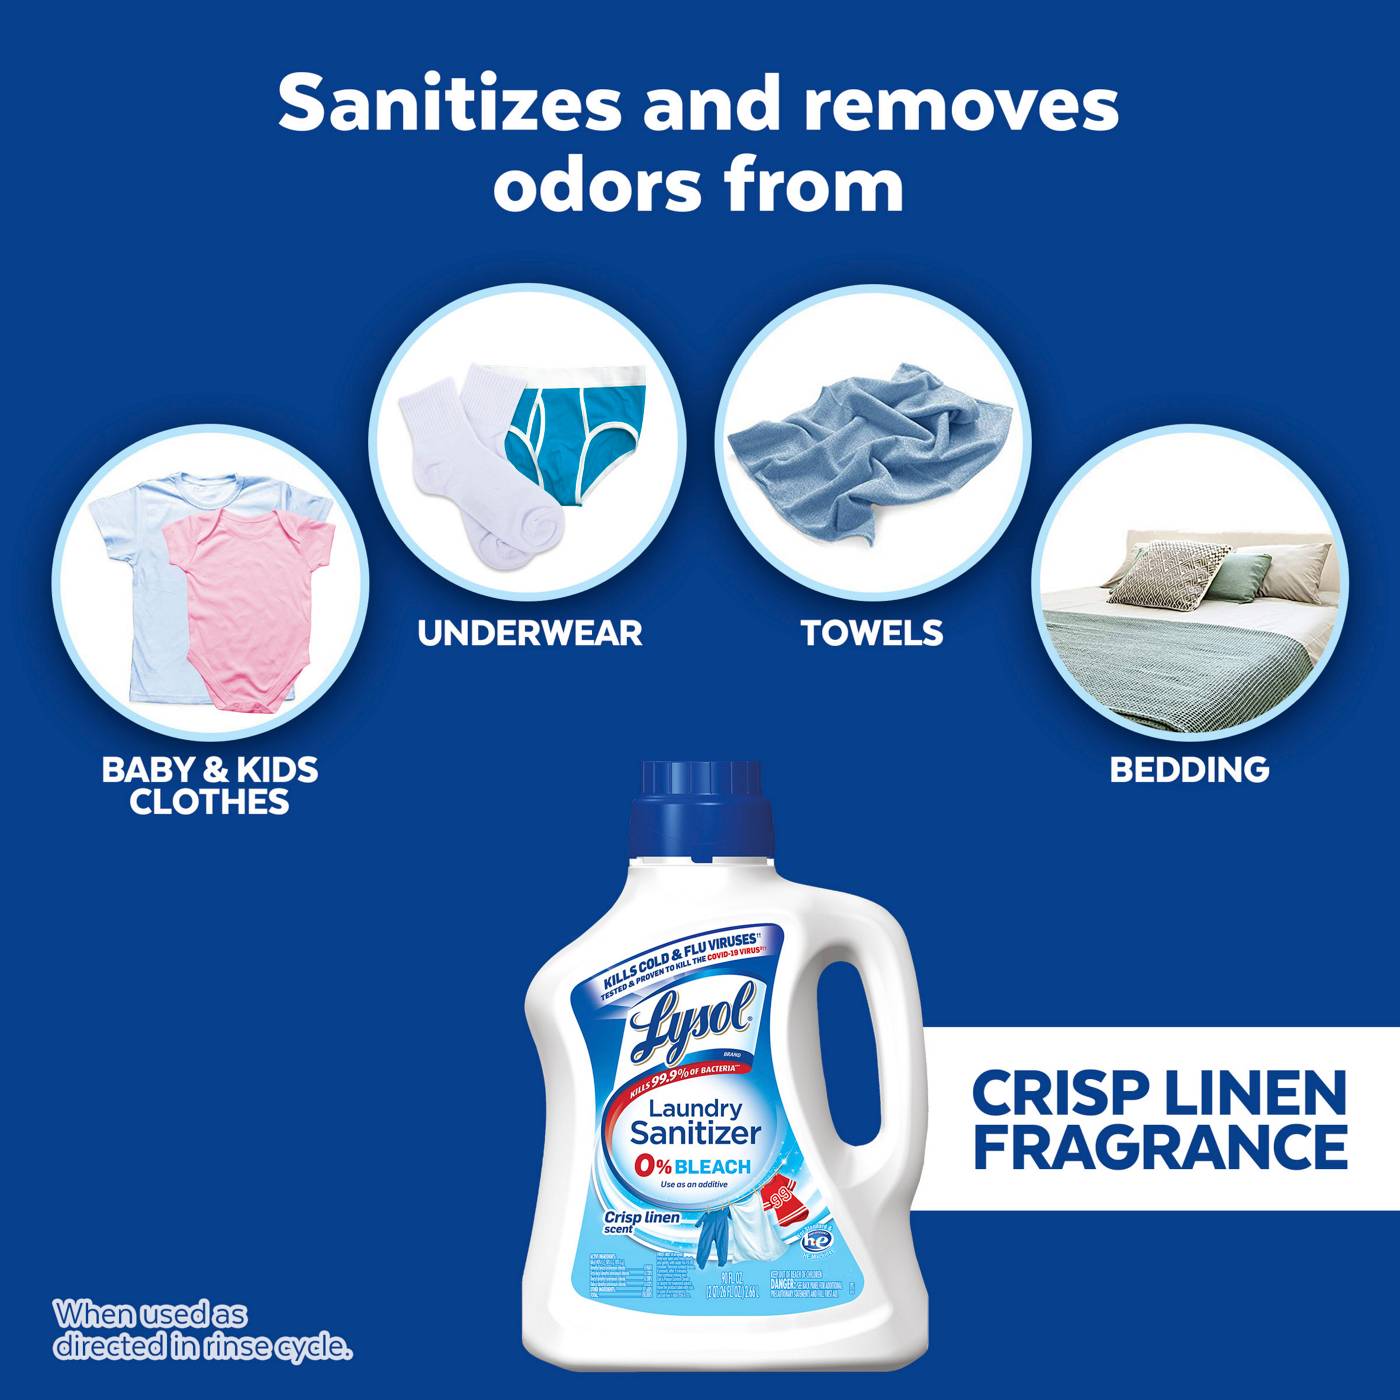 Lysol Crisp Linen Laundry Sanitizer; image 2 of 4